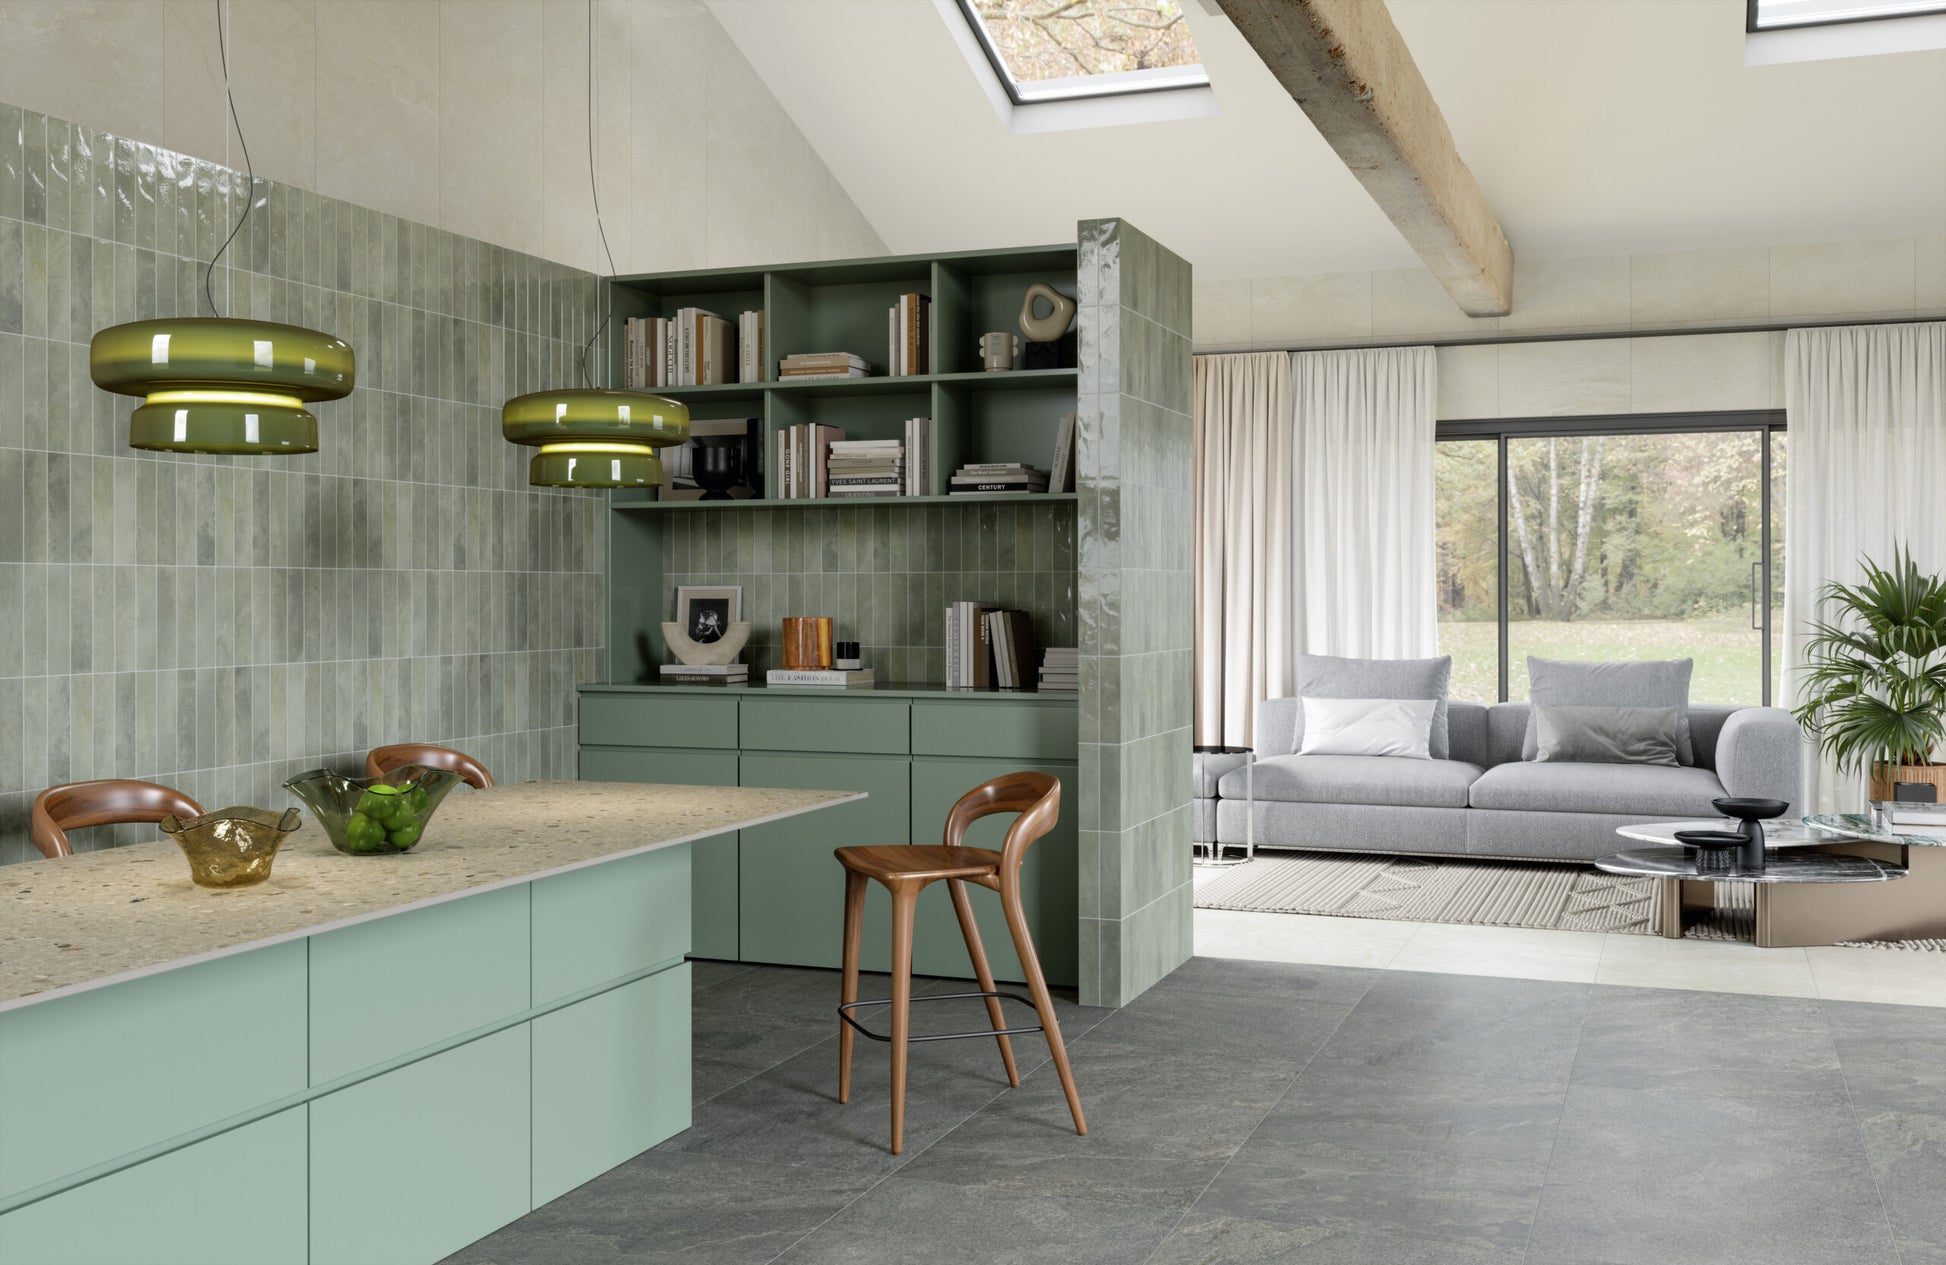 Desayunador en una cocina con muros en tonos verdes, una viga de madera que aporta carácter, y ventanas en el techo para una óptima iluminación natural.